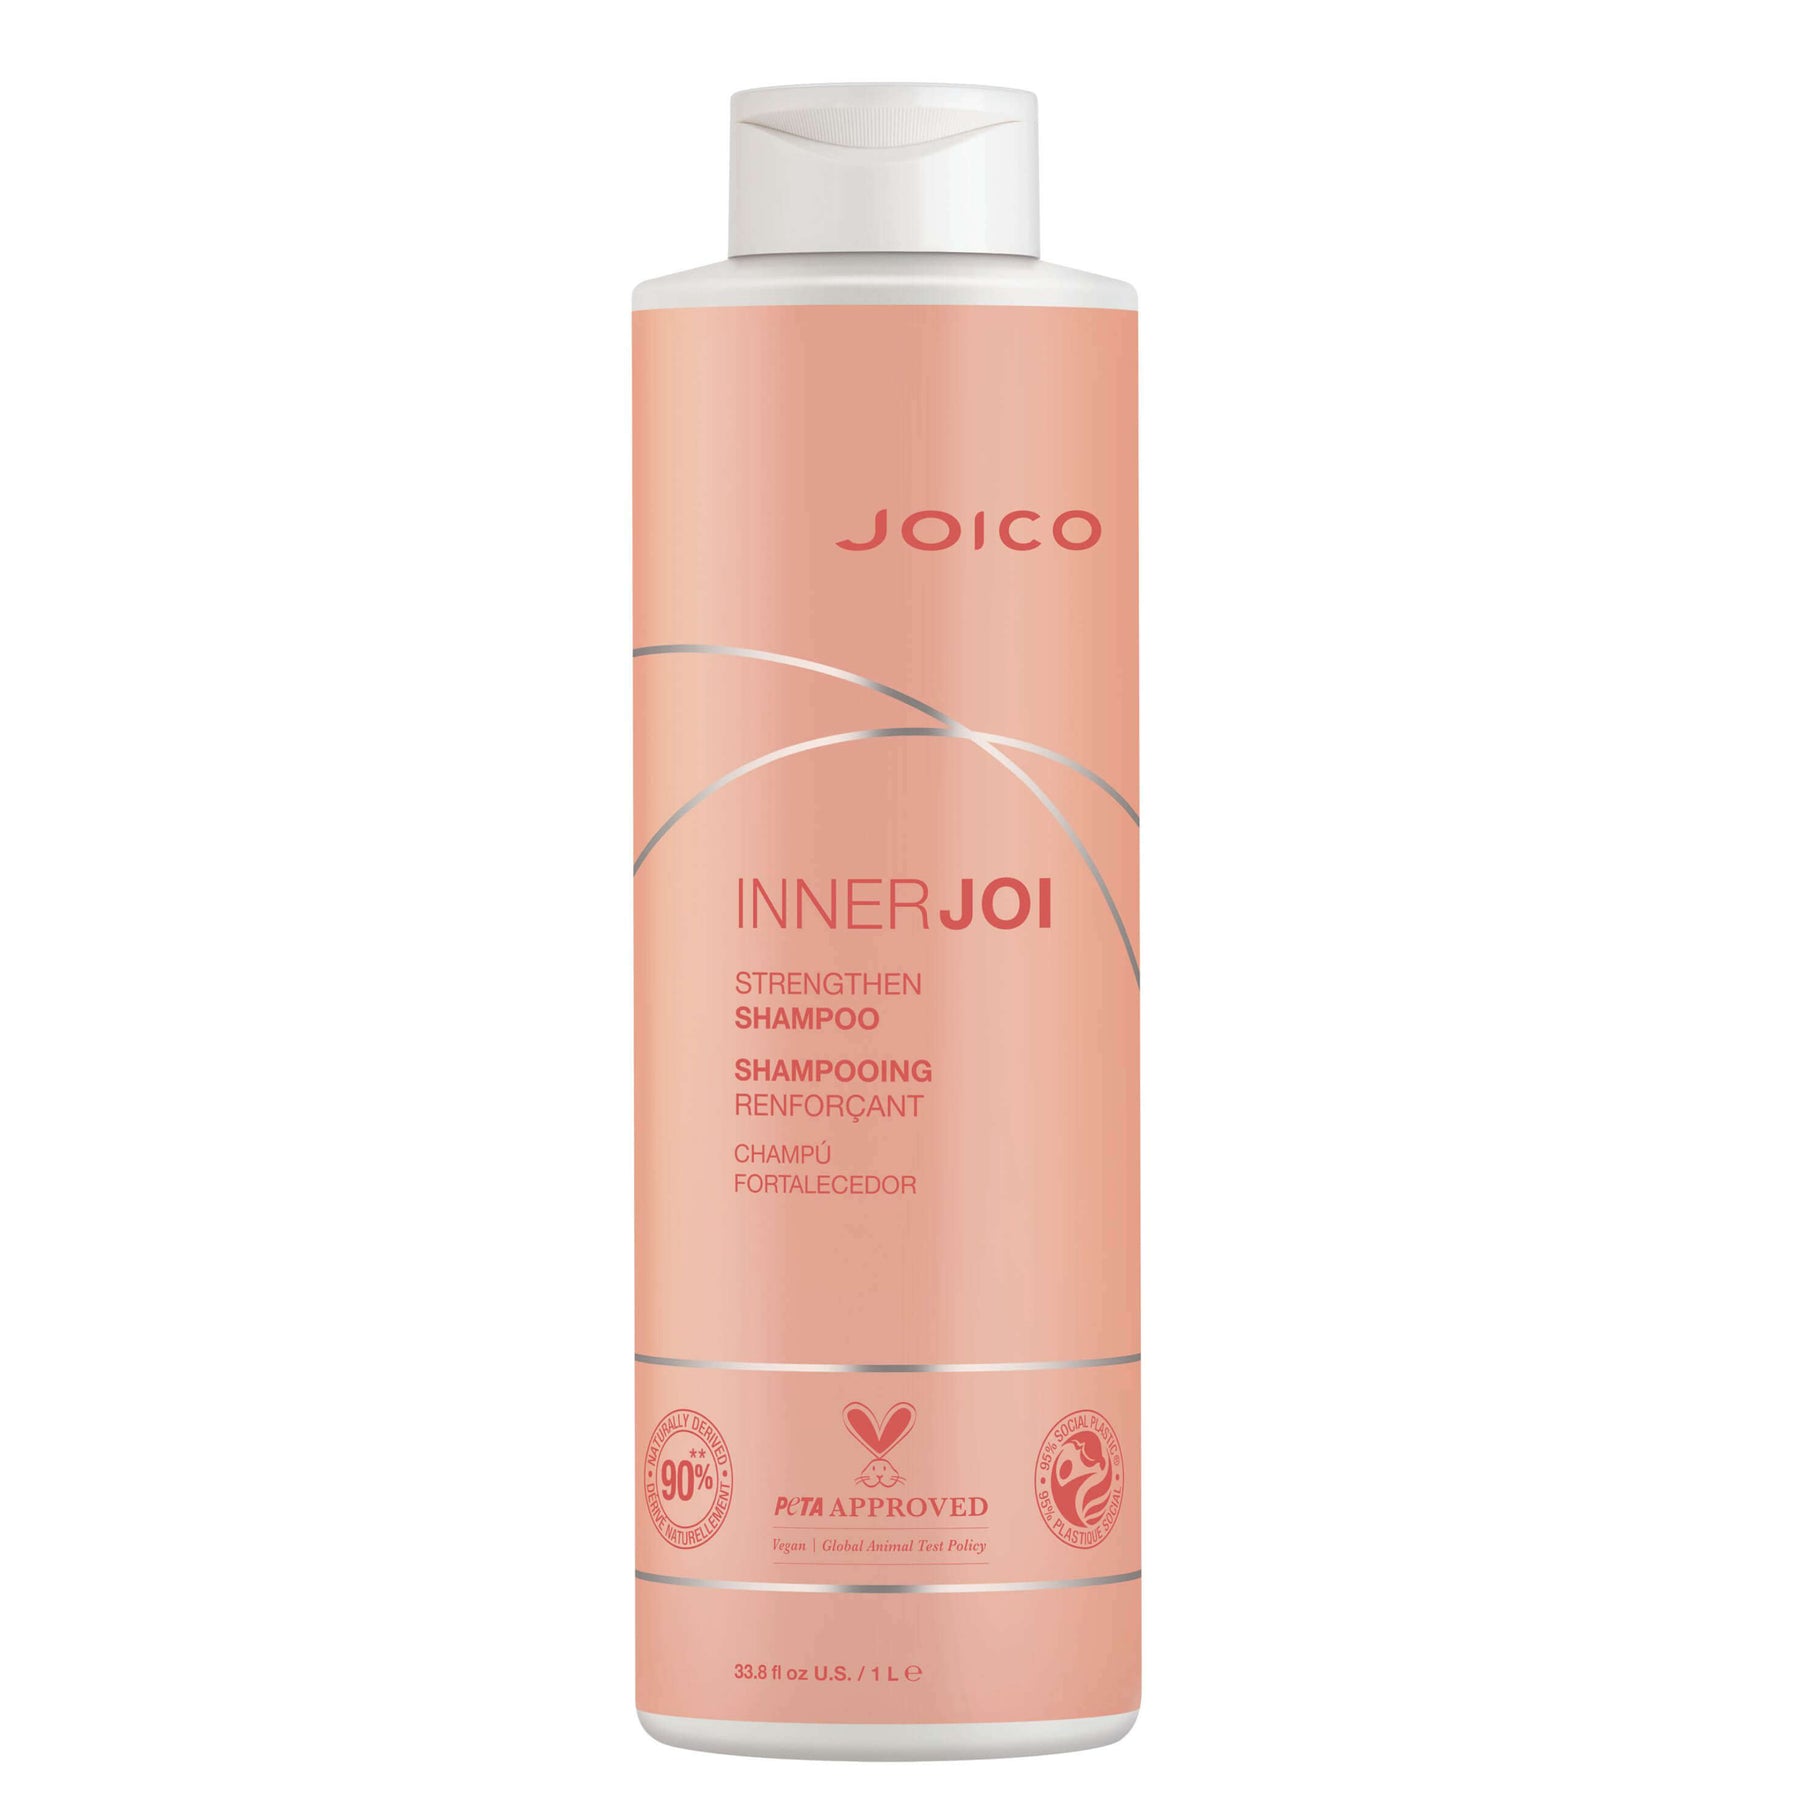 Joico InnerJoi Strengthen Shampoo 1000 ml